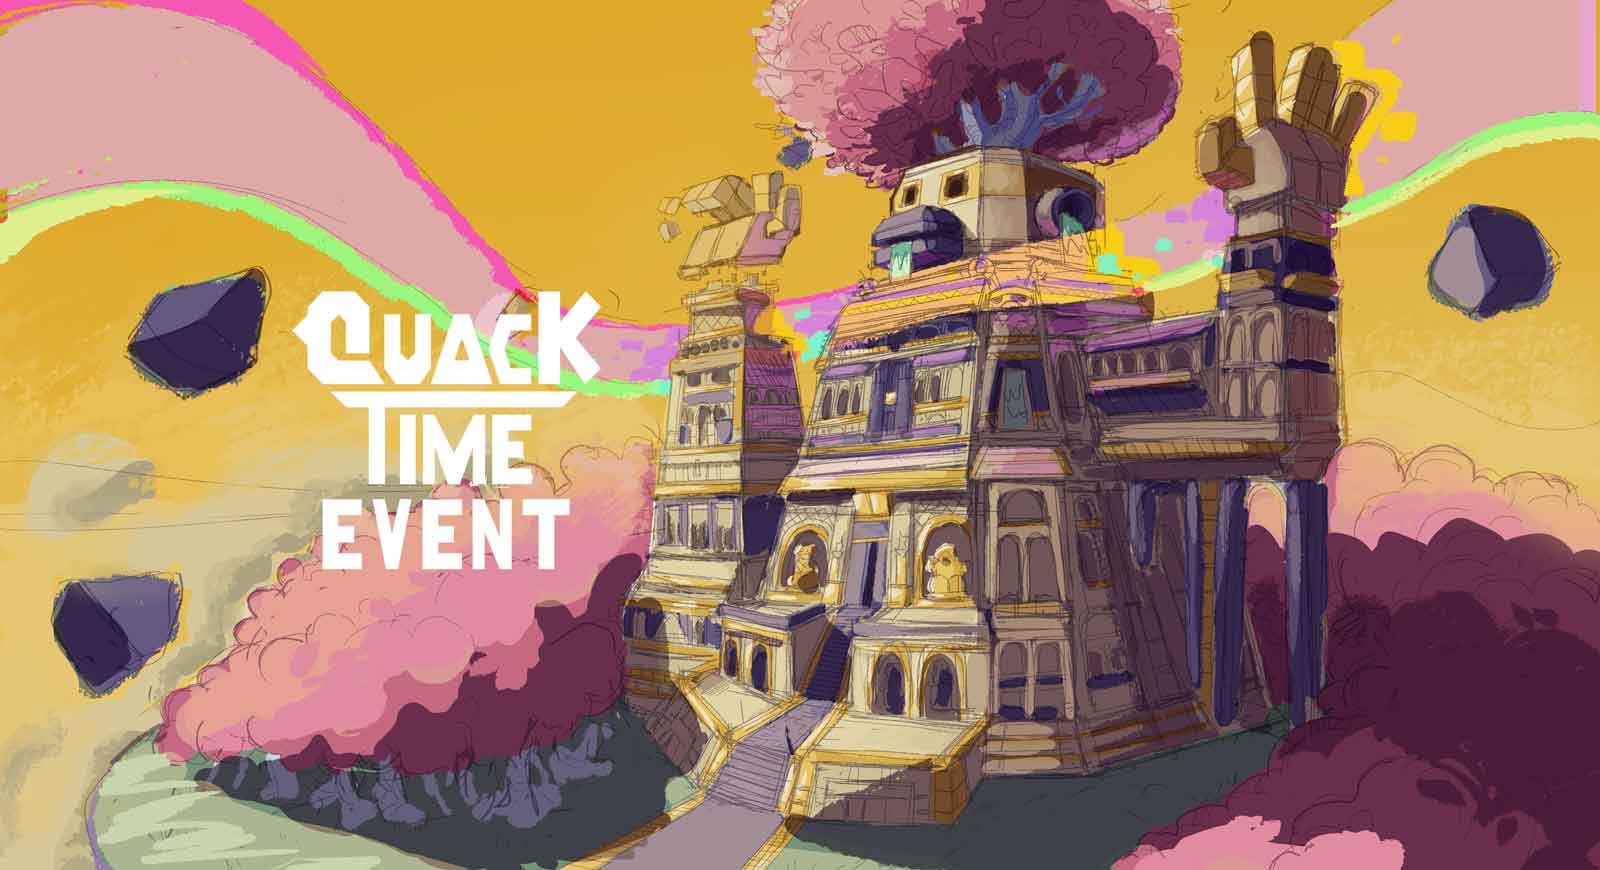 Quack Time Event